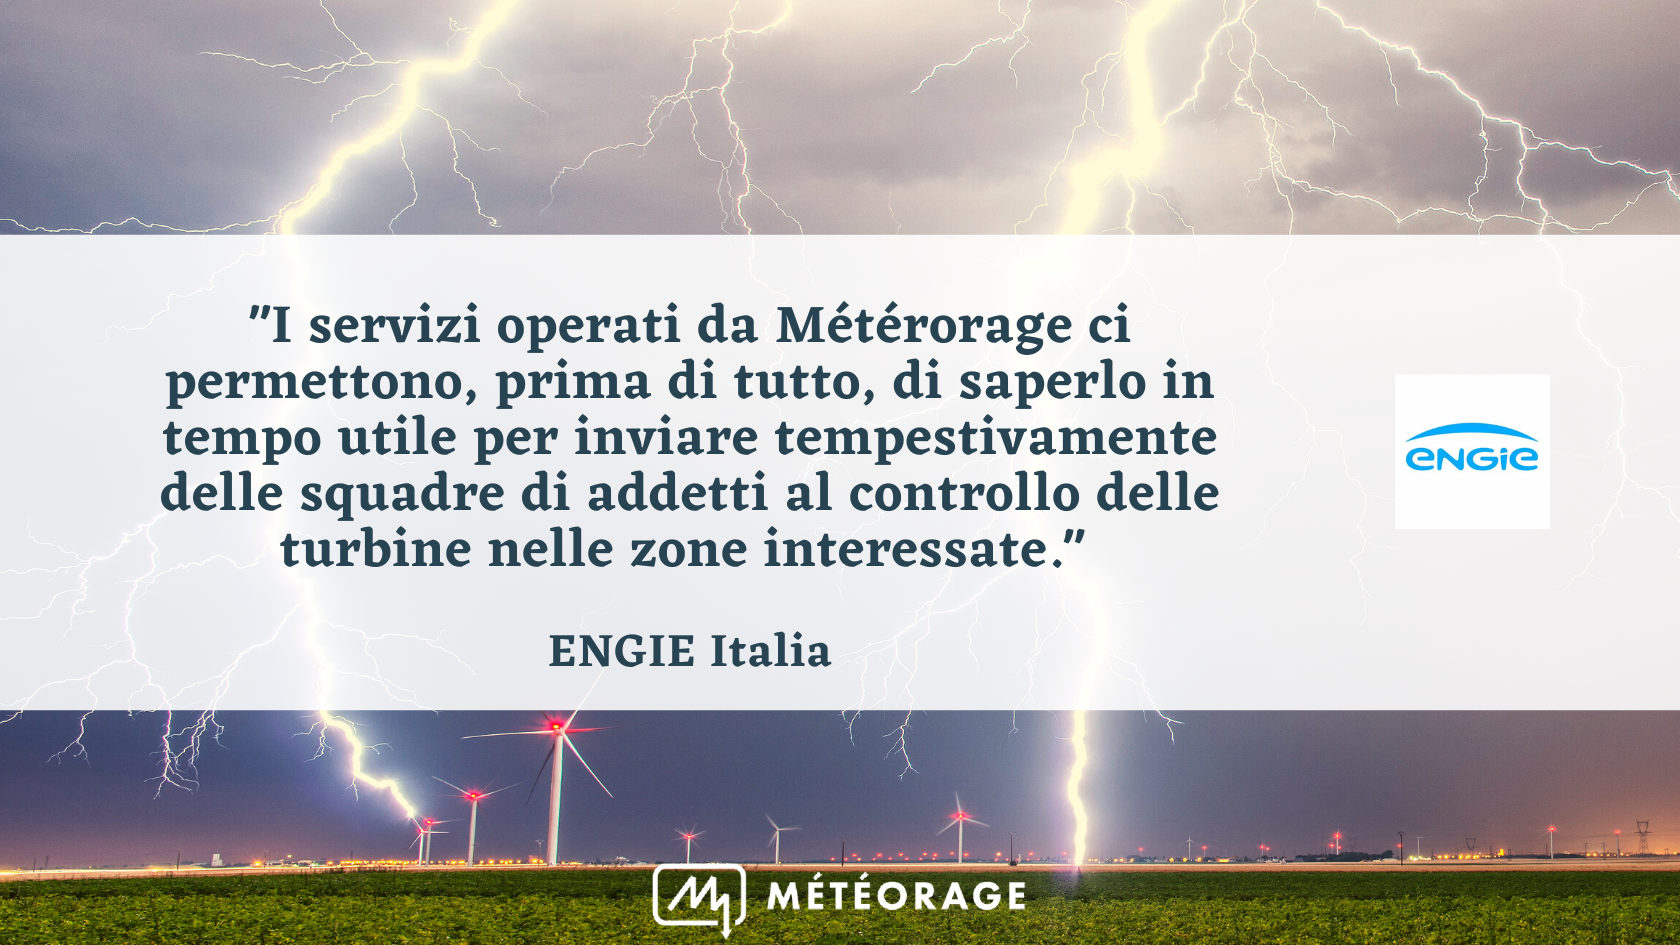 "I servizi operati da Métérorage ci permettono, prima di tutto, di saperlo in tempo utile per inviare tempestivamente delle squadre di addetti al controllo delle turbine nelle zone interessate", Engie Italia